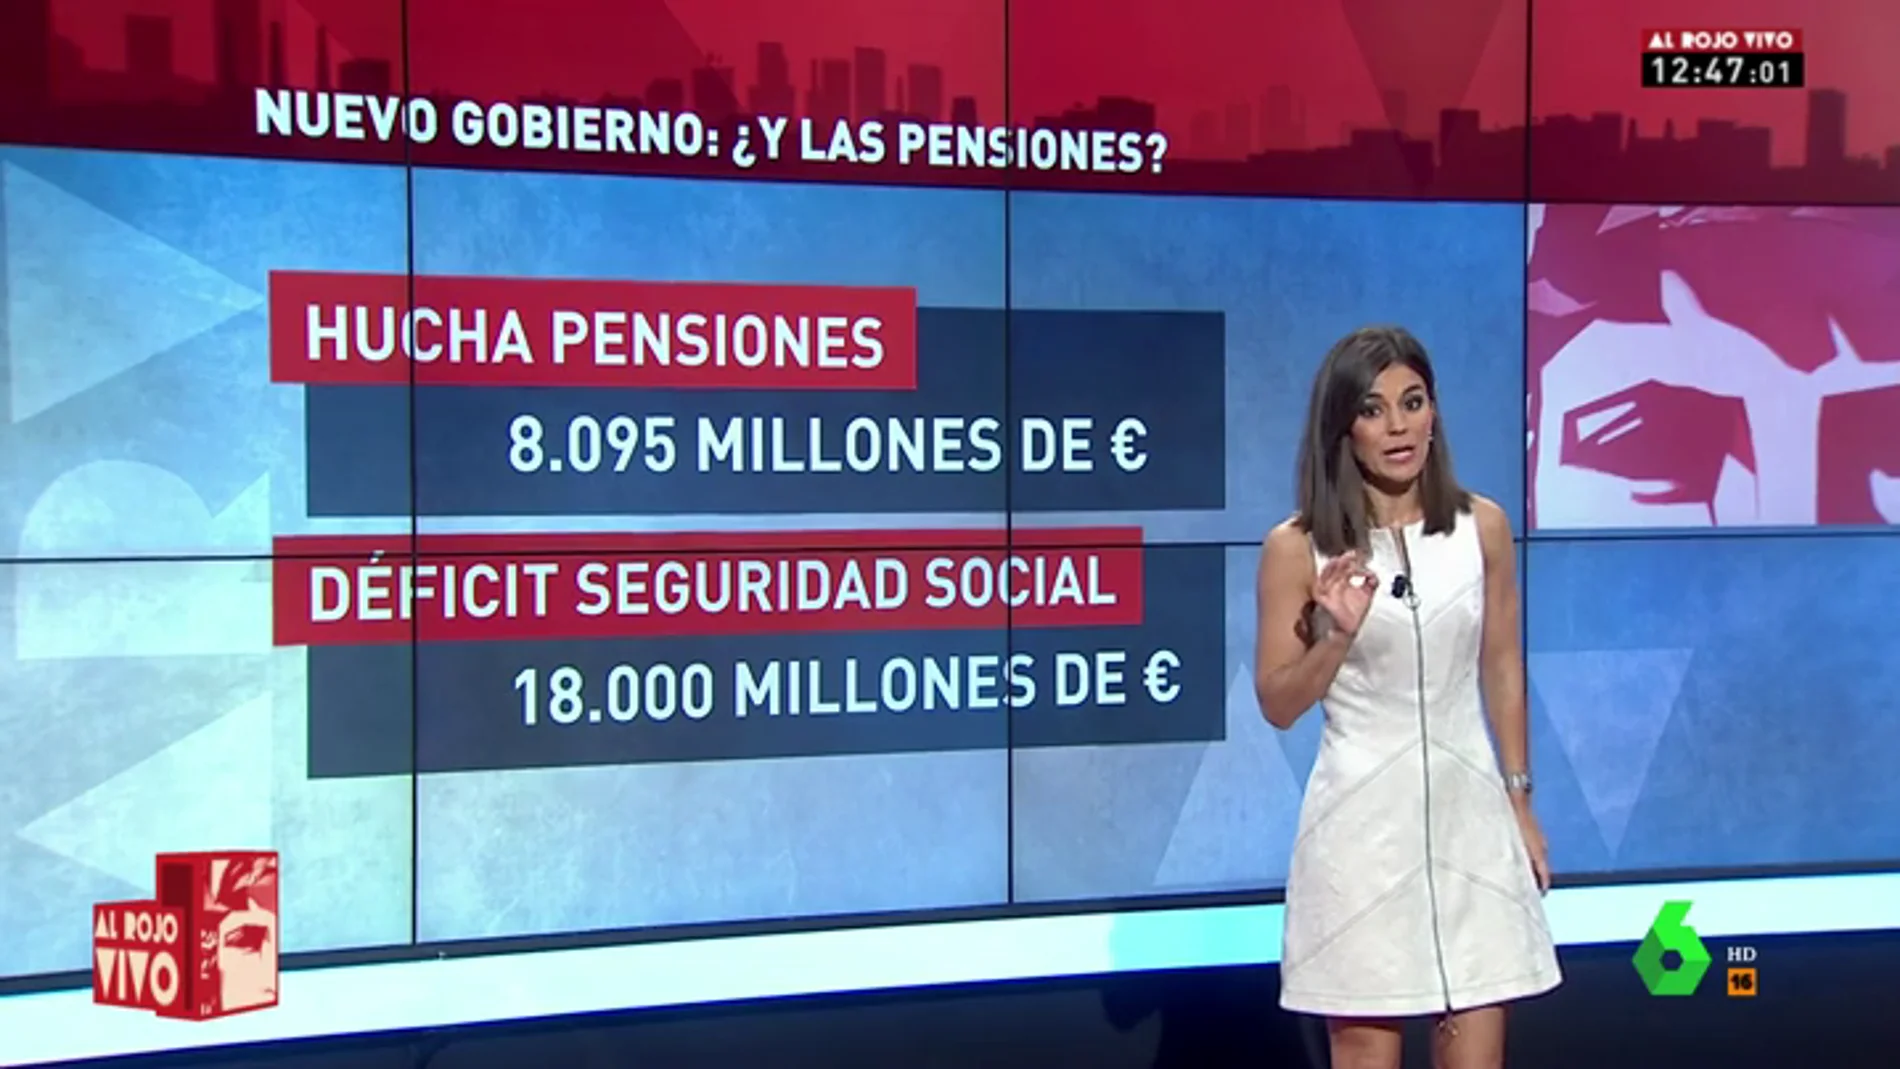 <p>Así plantea arreglar Sánchez el problema de las pensiones, 'tiritando' y con un déficit de 18.000 millones</p>